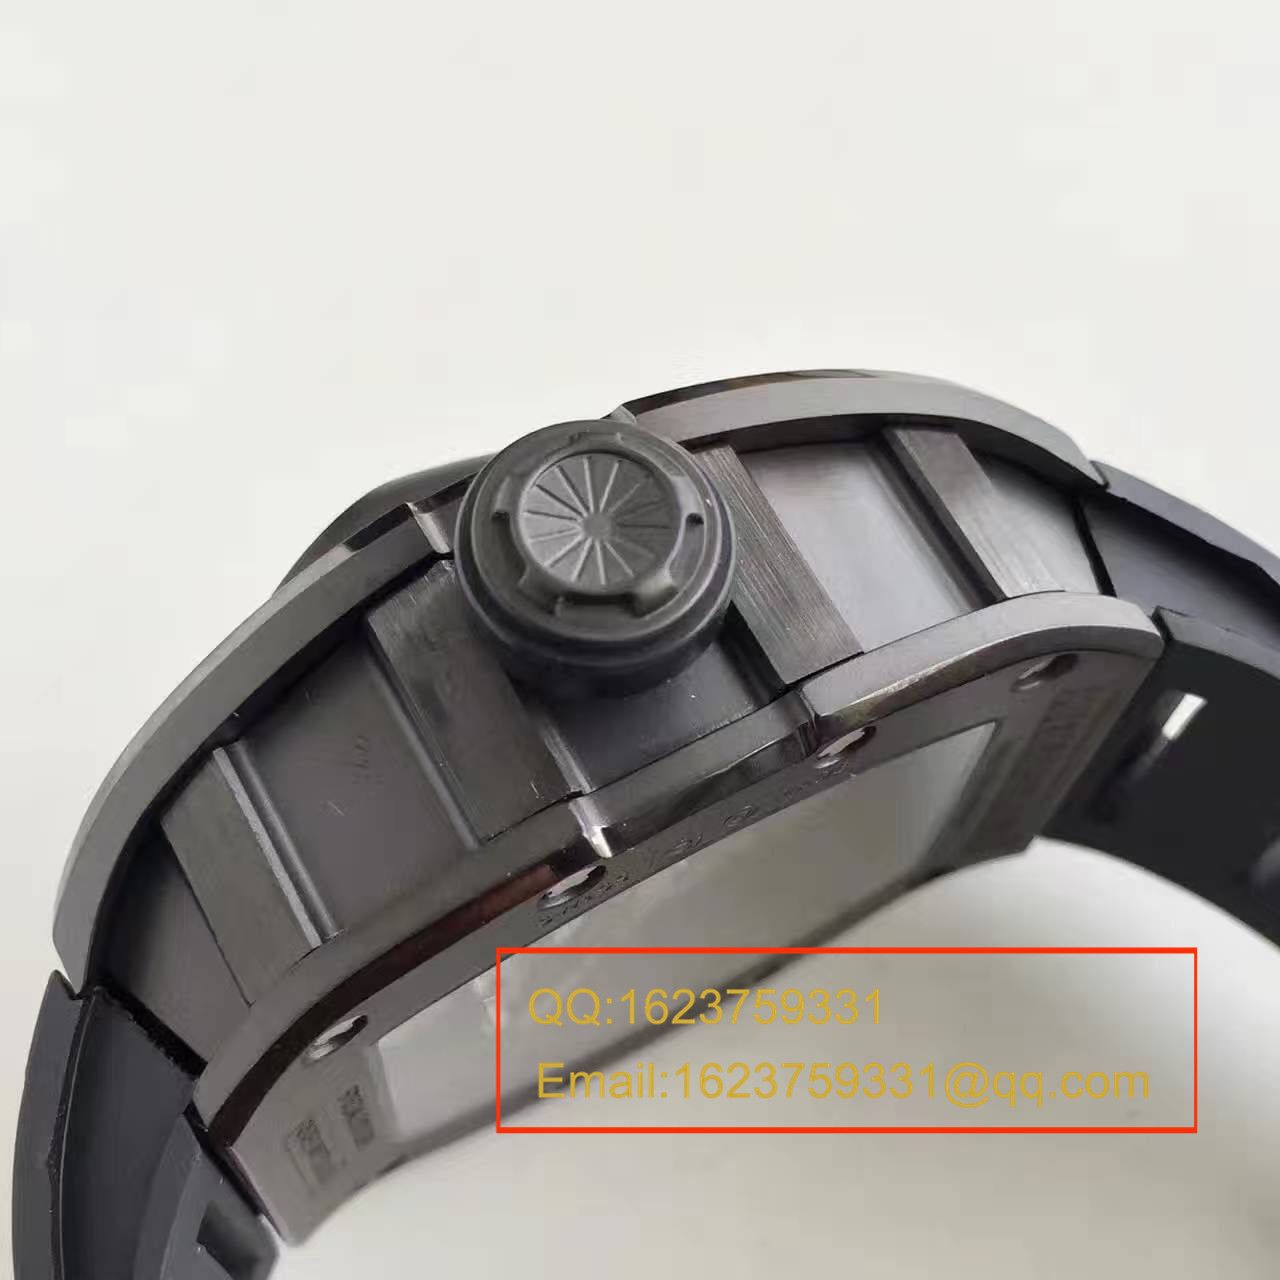 【RM超A精仿手表】里查德米勒男士系列RM 053腕表 